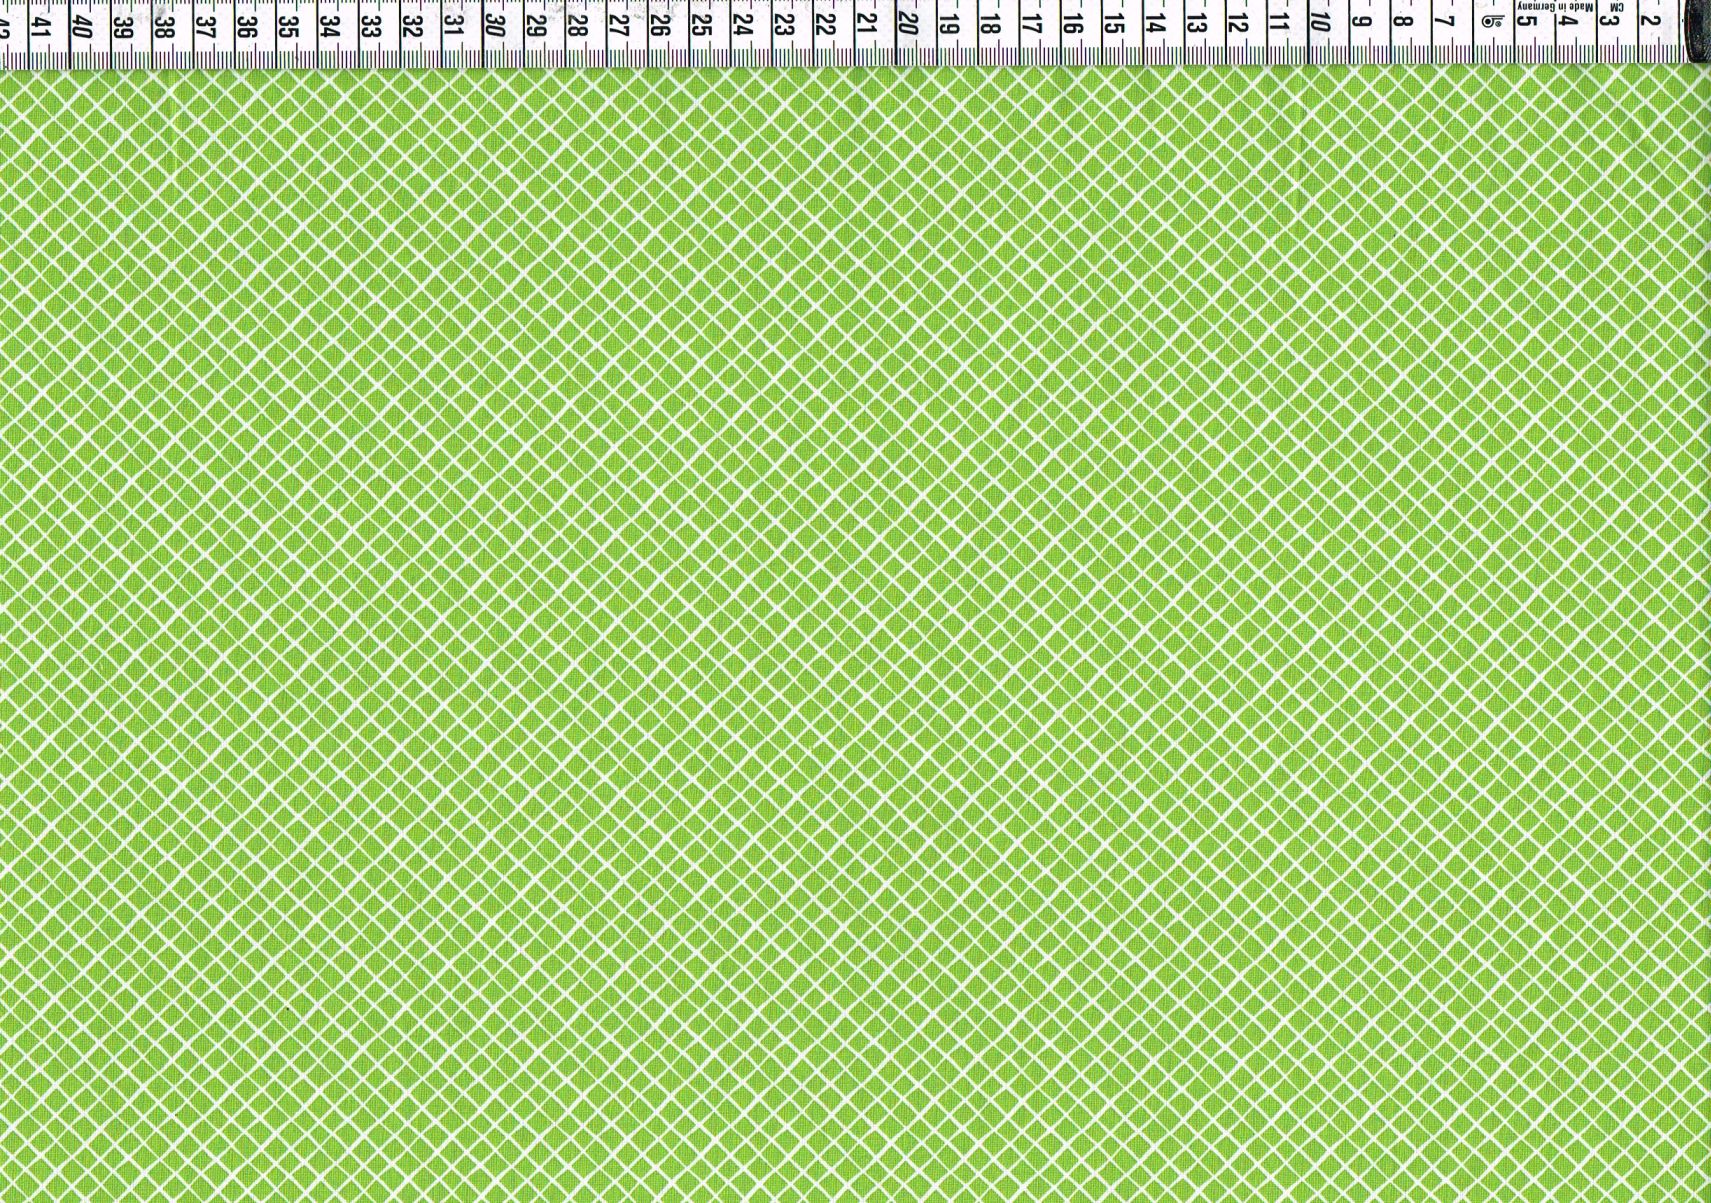 Baumwollgewebe - kleine Rauten apfelgrün/weiß